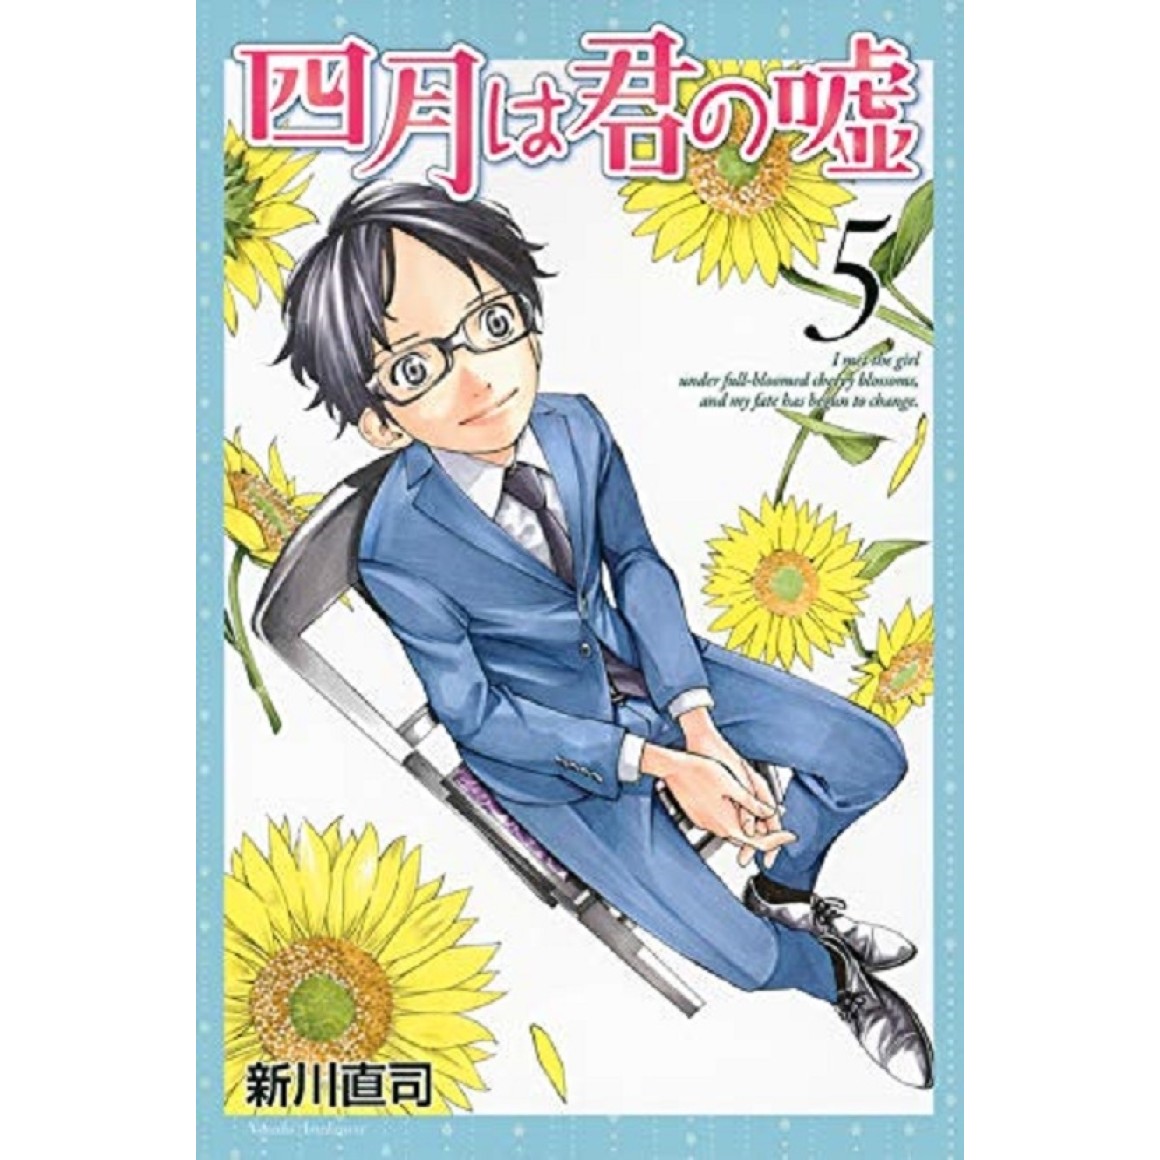 Your Lie in April Volume 4 (Shigatsu wa Kimi no Uso) - Manga Store 